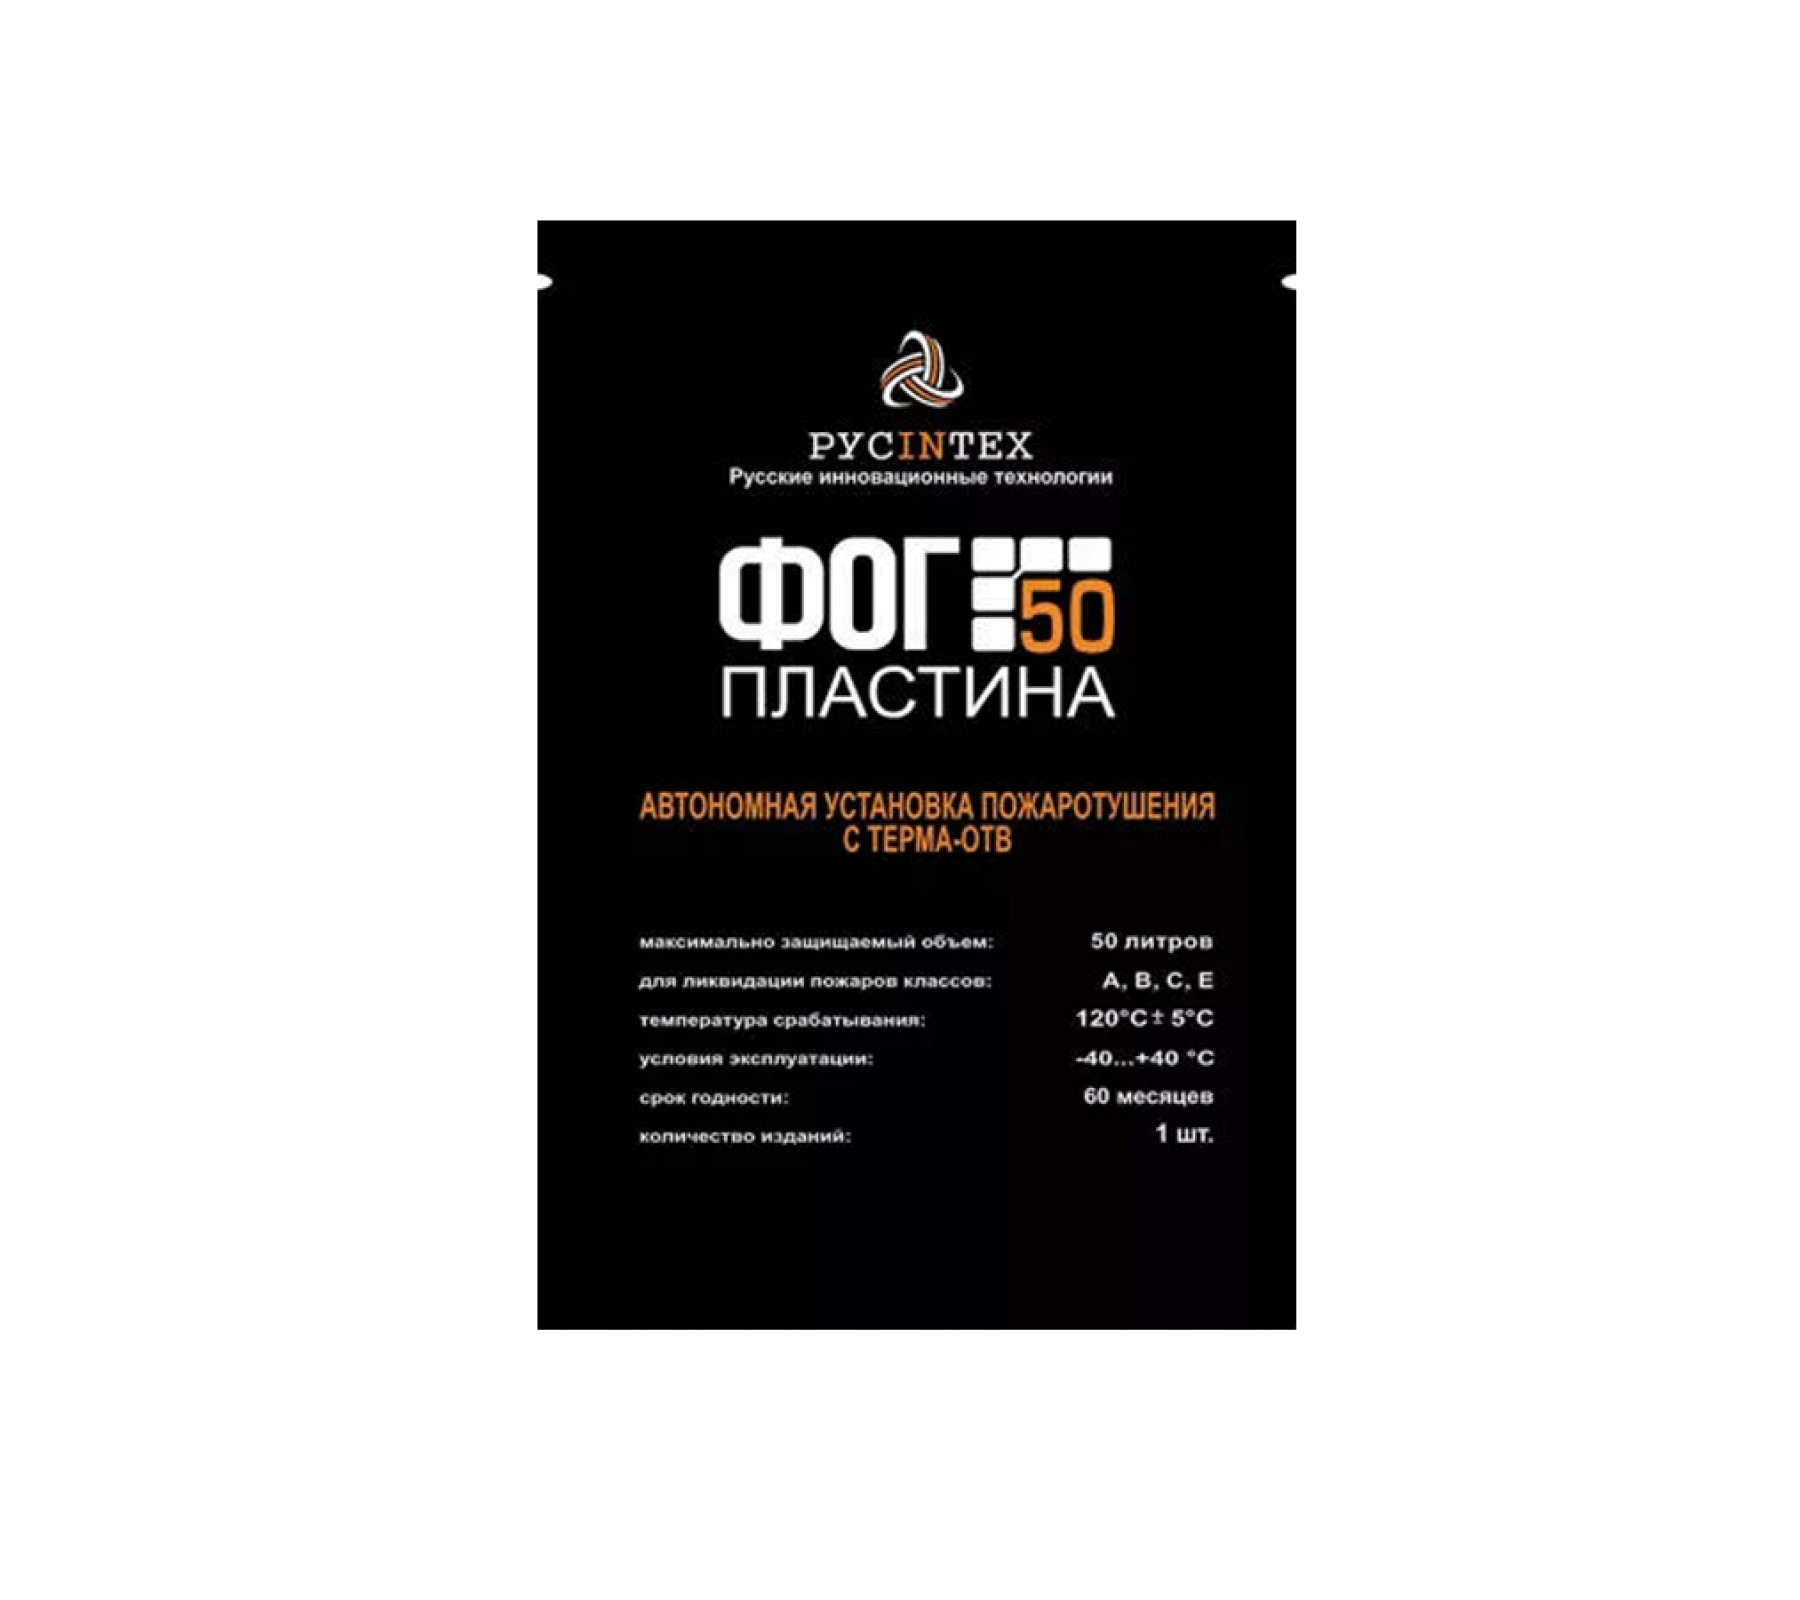 Автономная установка пожаротушения с Терма ОТВ "ФОГ 50 пластина"